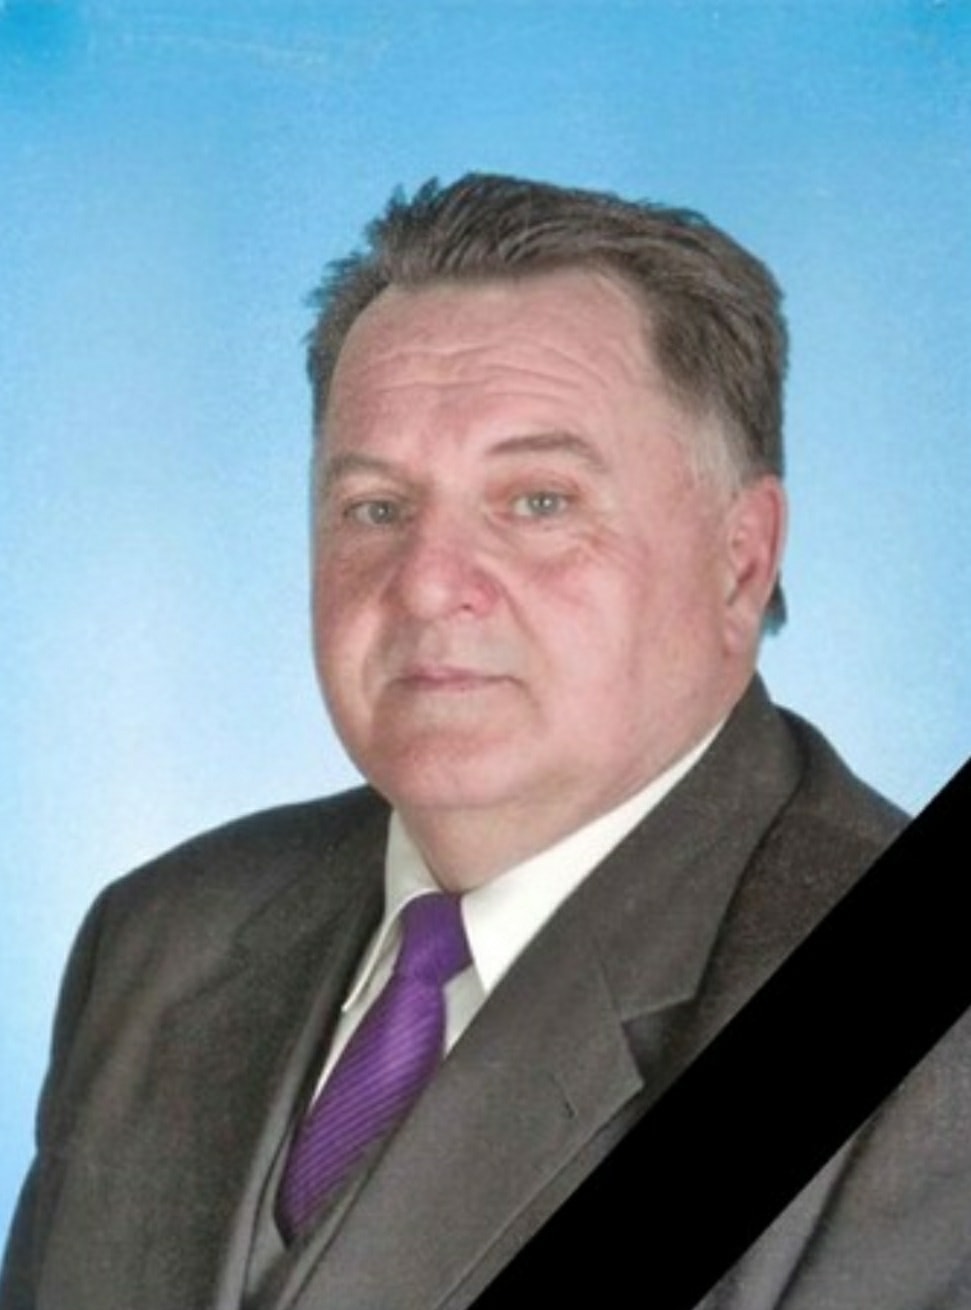 Zomrel významný poslanec mesta Rožňava Eduard Mihók.